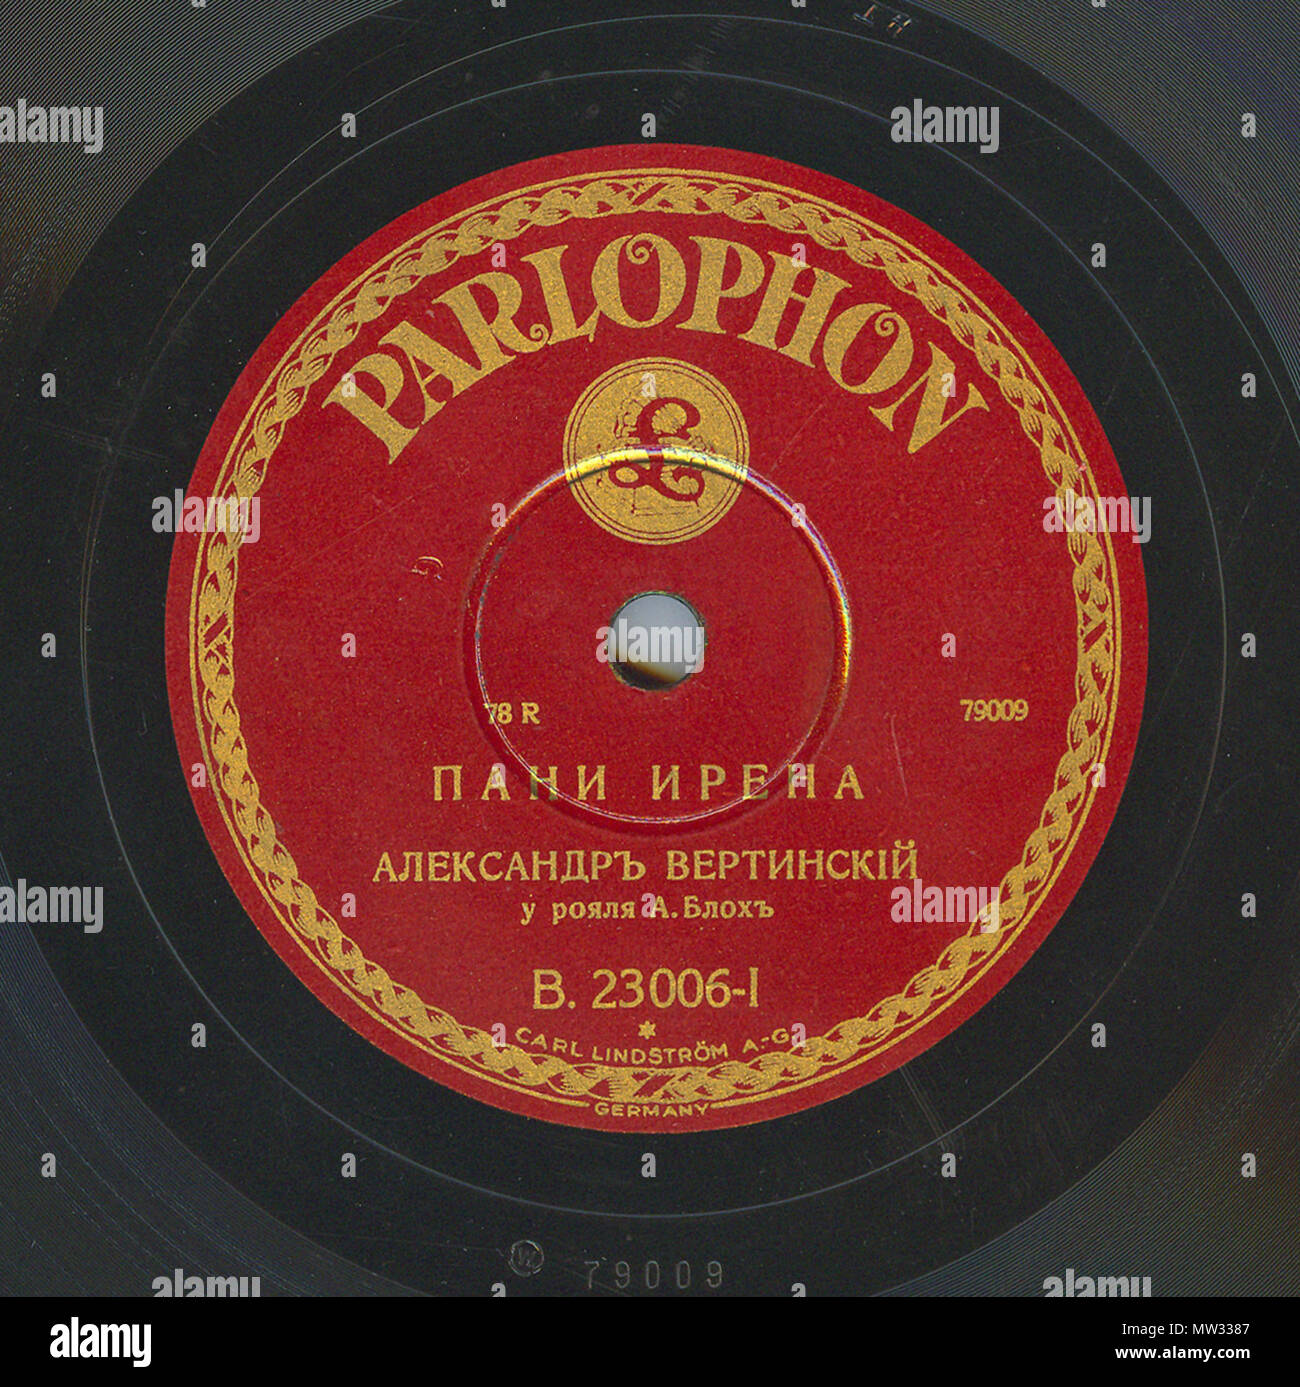 . Englisch: Vertinsky Parlophone B. 23006 01. 6. April 2010, 12:03:29. Parlophone 629 Vertinsky Parlophone B. 23006, 01. Stockfoto